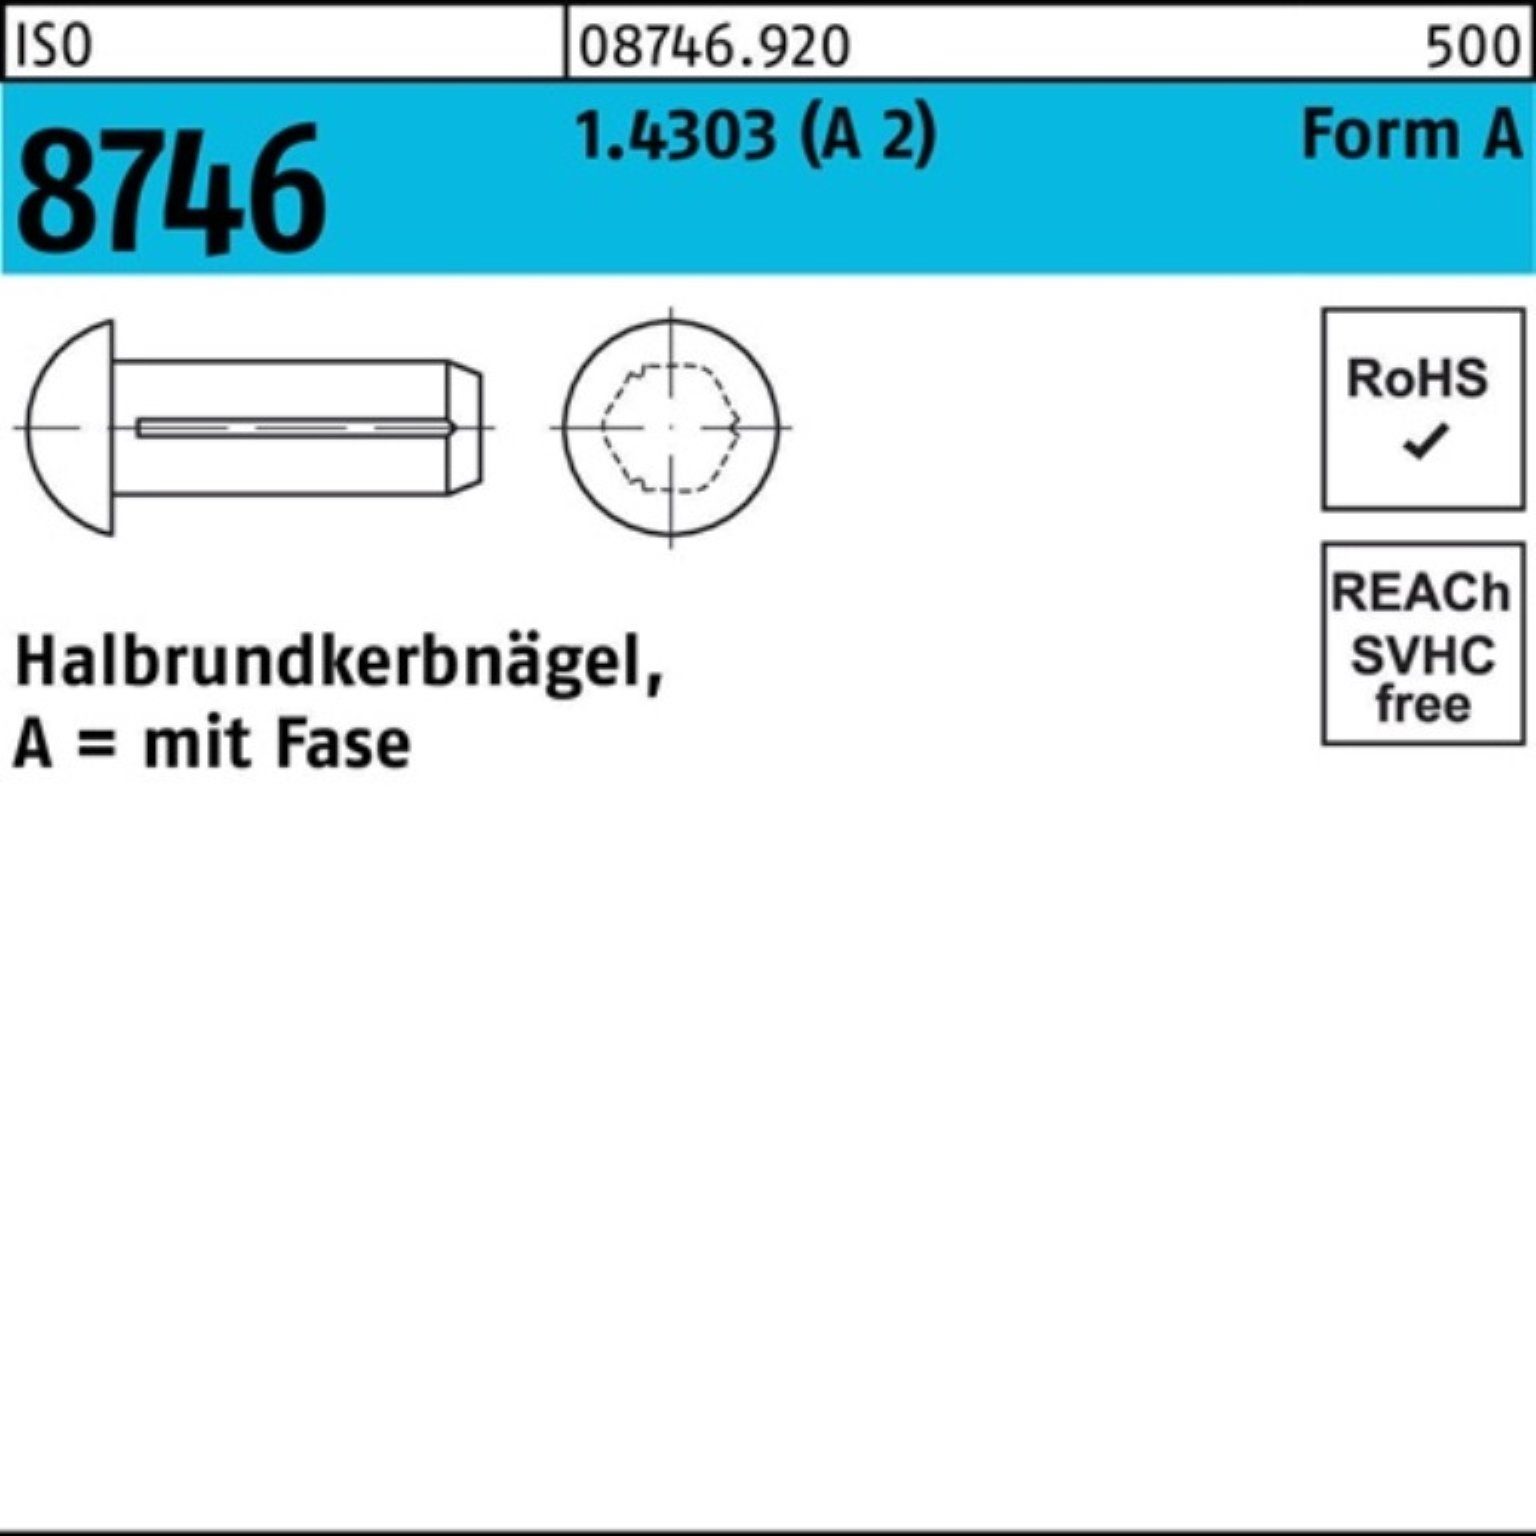 6 Fase 2) Reyher 100 (A ISO Halbrundkerbnagel Pack Stüc Nagel 2x 8746 1.4303 100er